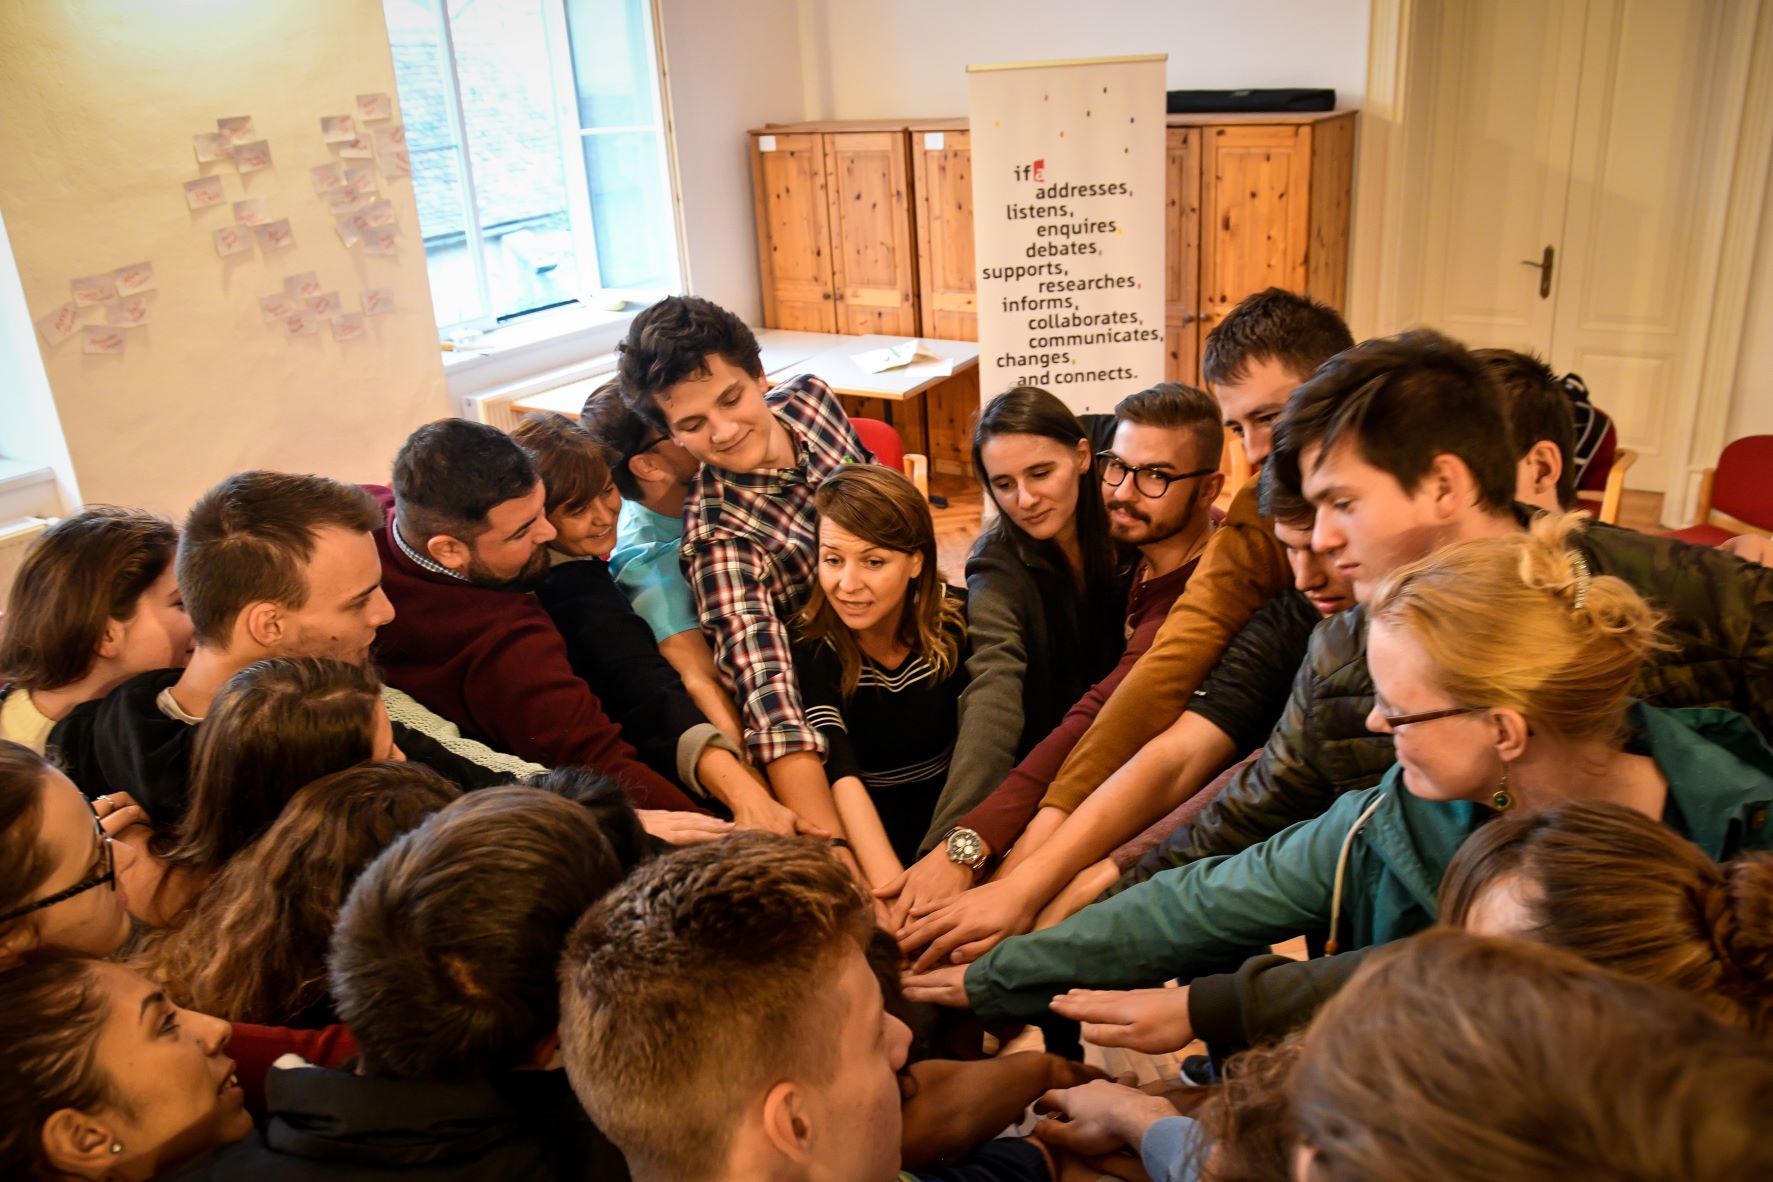 Man sieht eine Gruppe Menschen bei einem Seminar. Sie stehen im Kreis und alle halten ihre Hände in der Mitte zusammen.